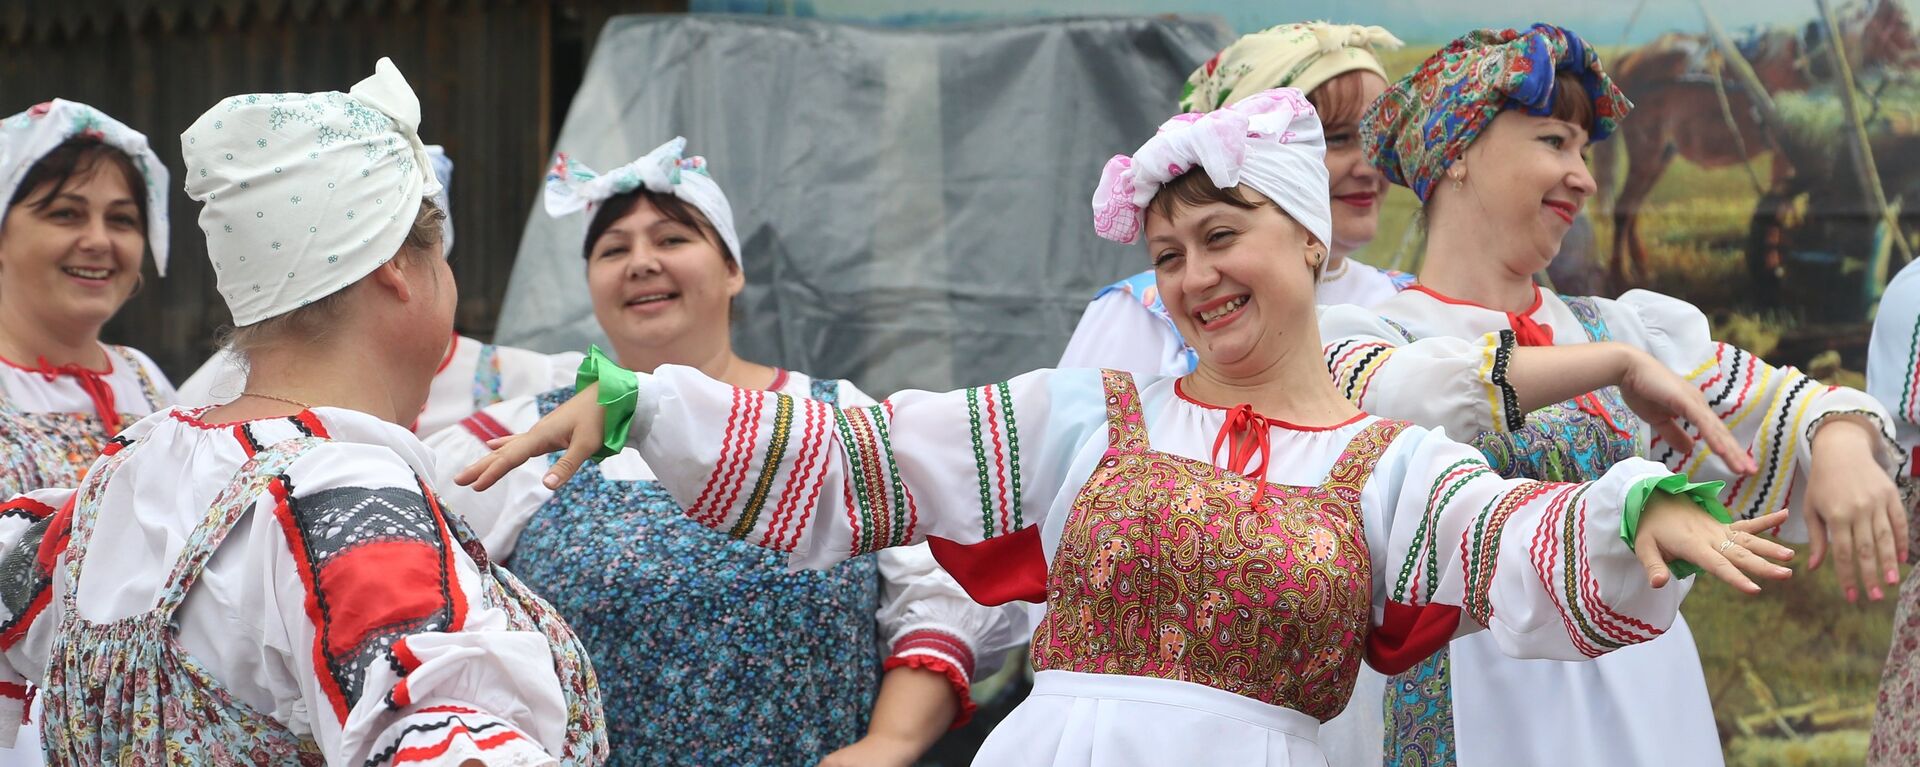 Женщины в русских национальных костюмах - Sputnik Латвия, 1920, 27.01.2021